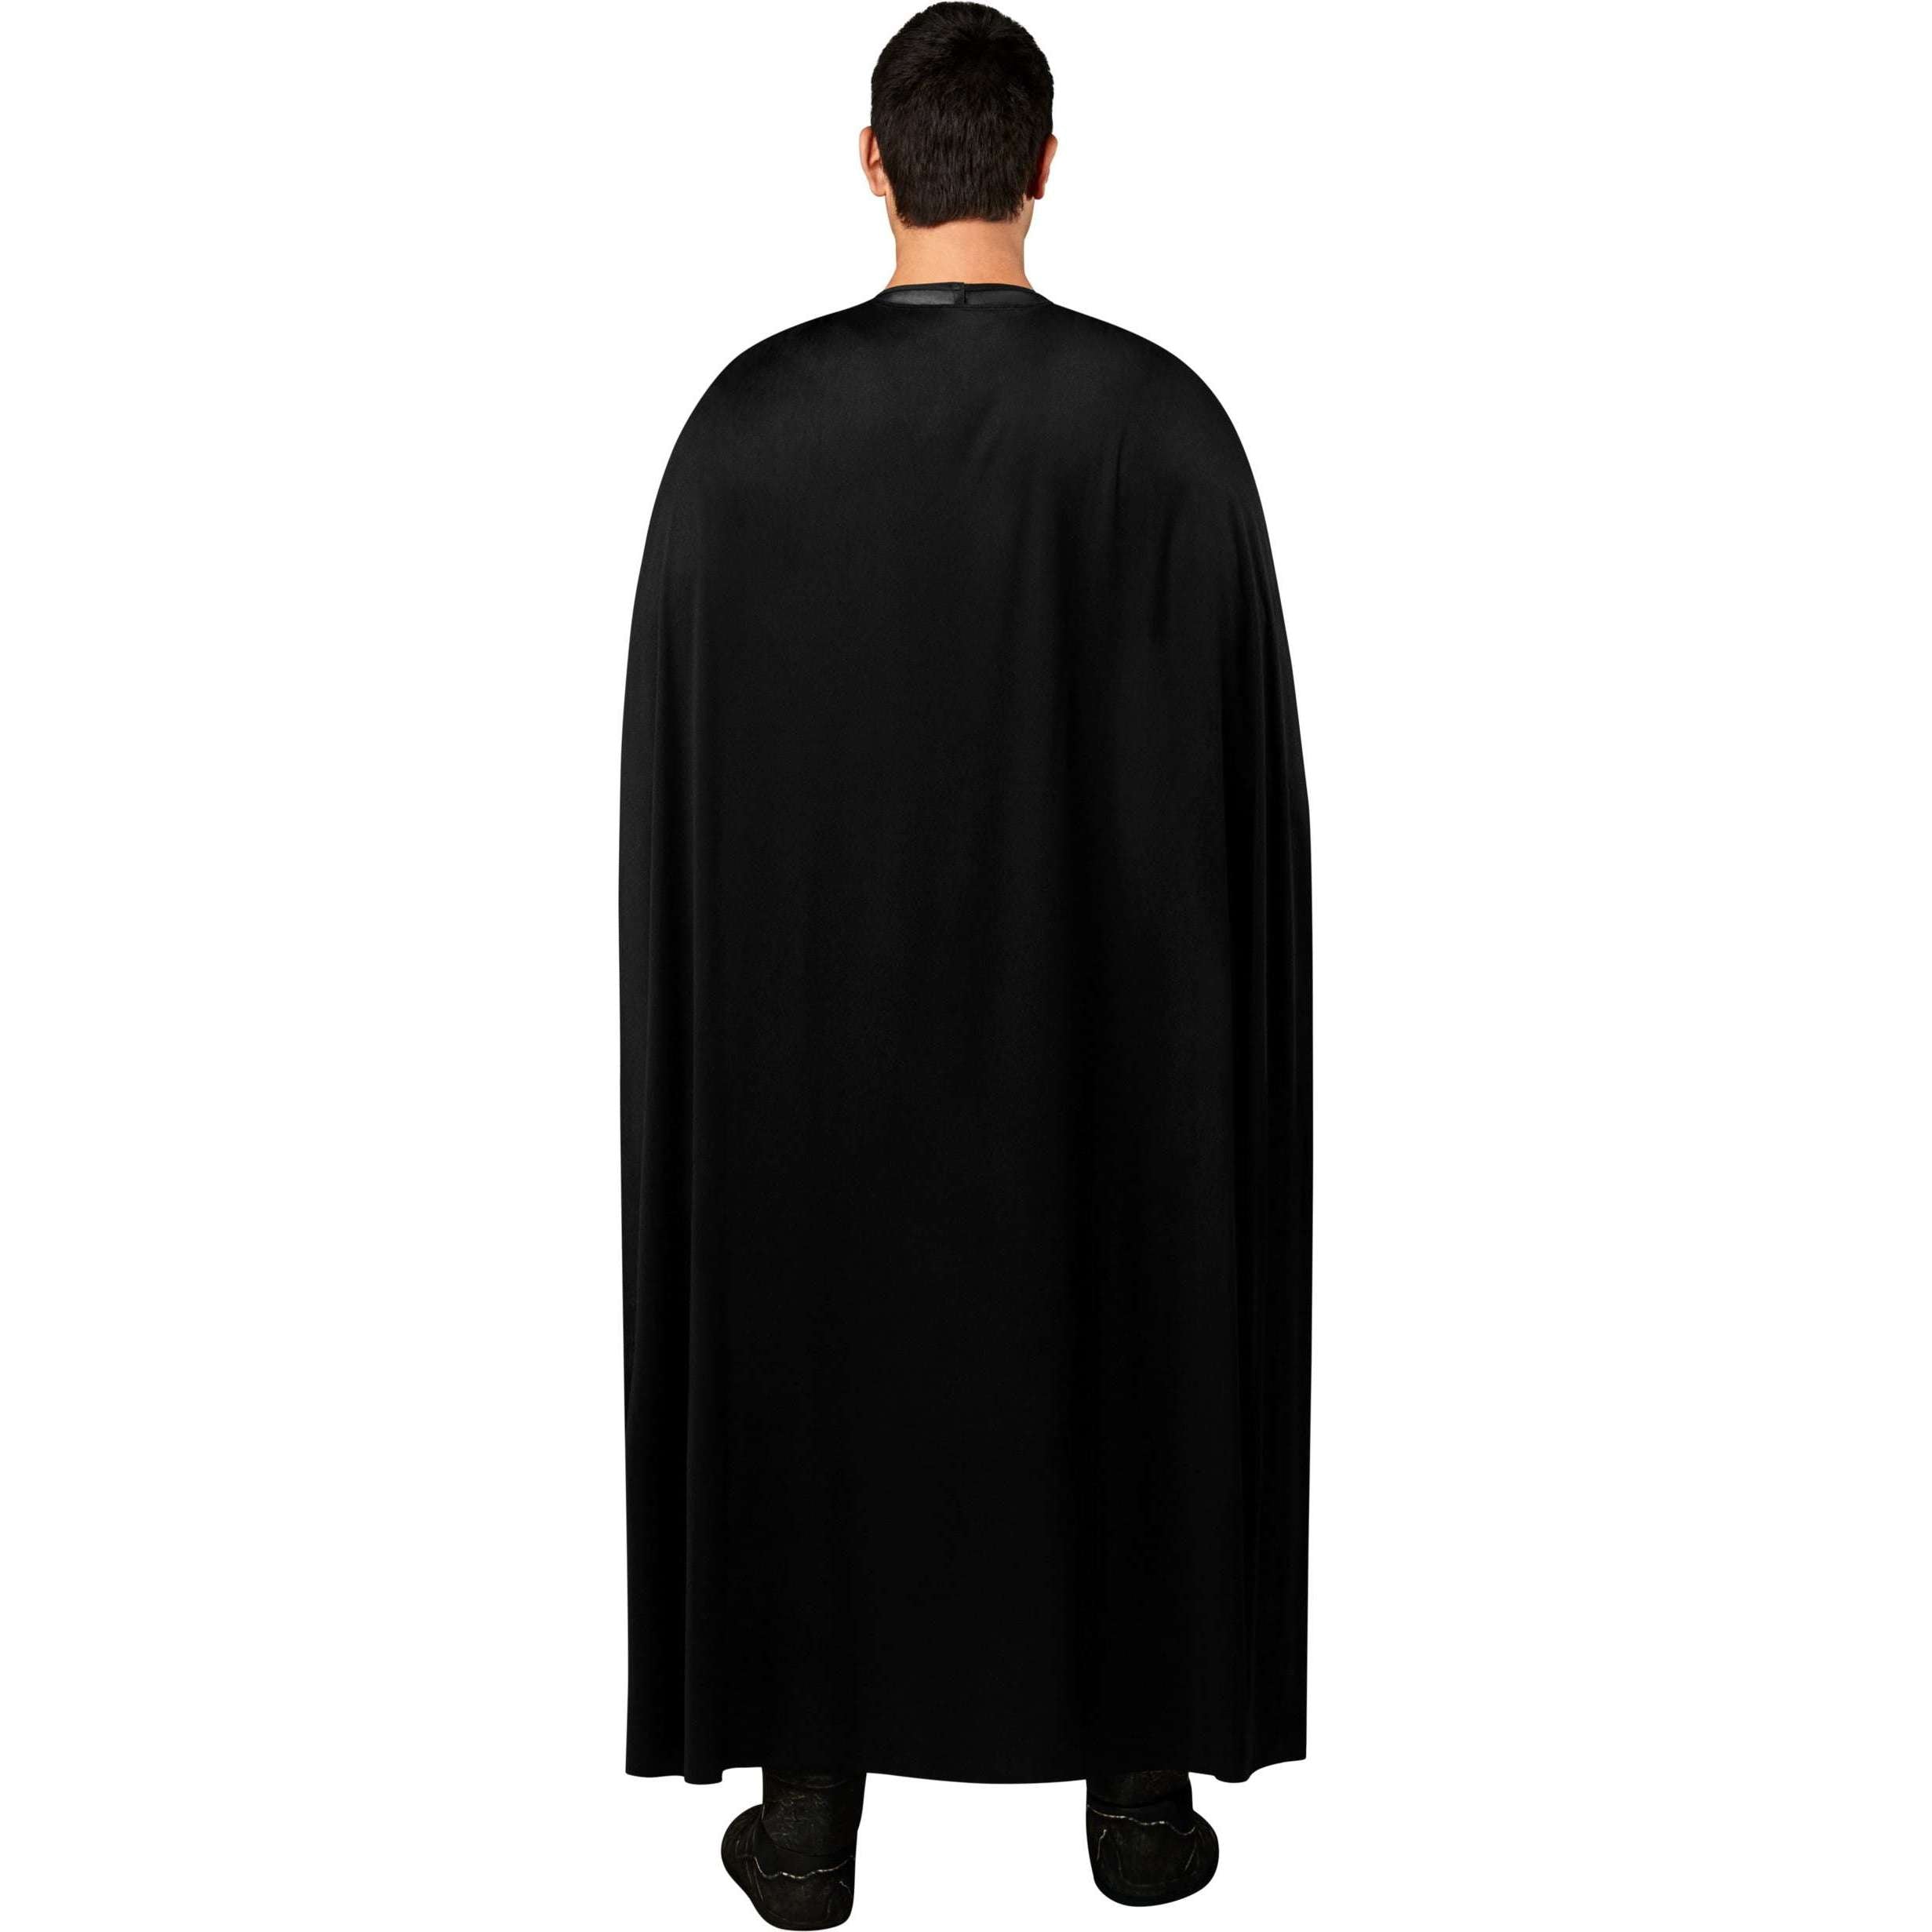 Black Adam Deluxe Men's Adult Costume